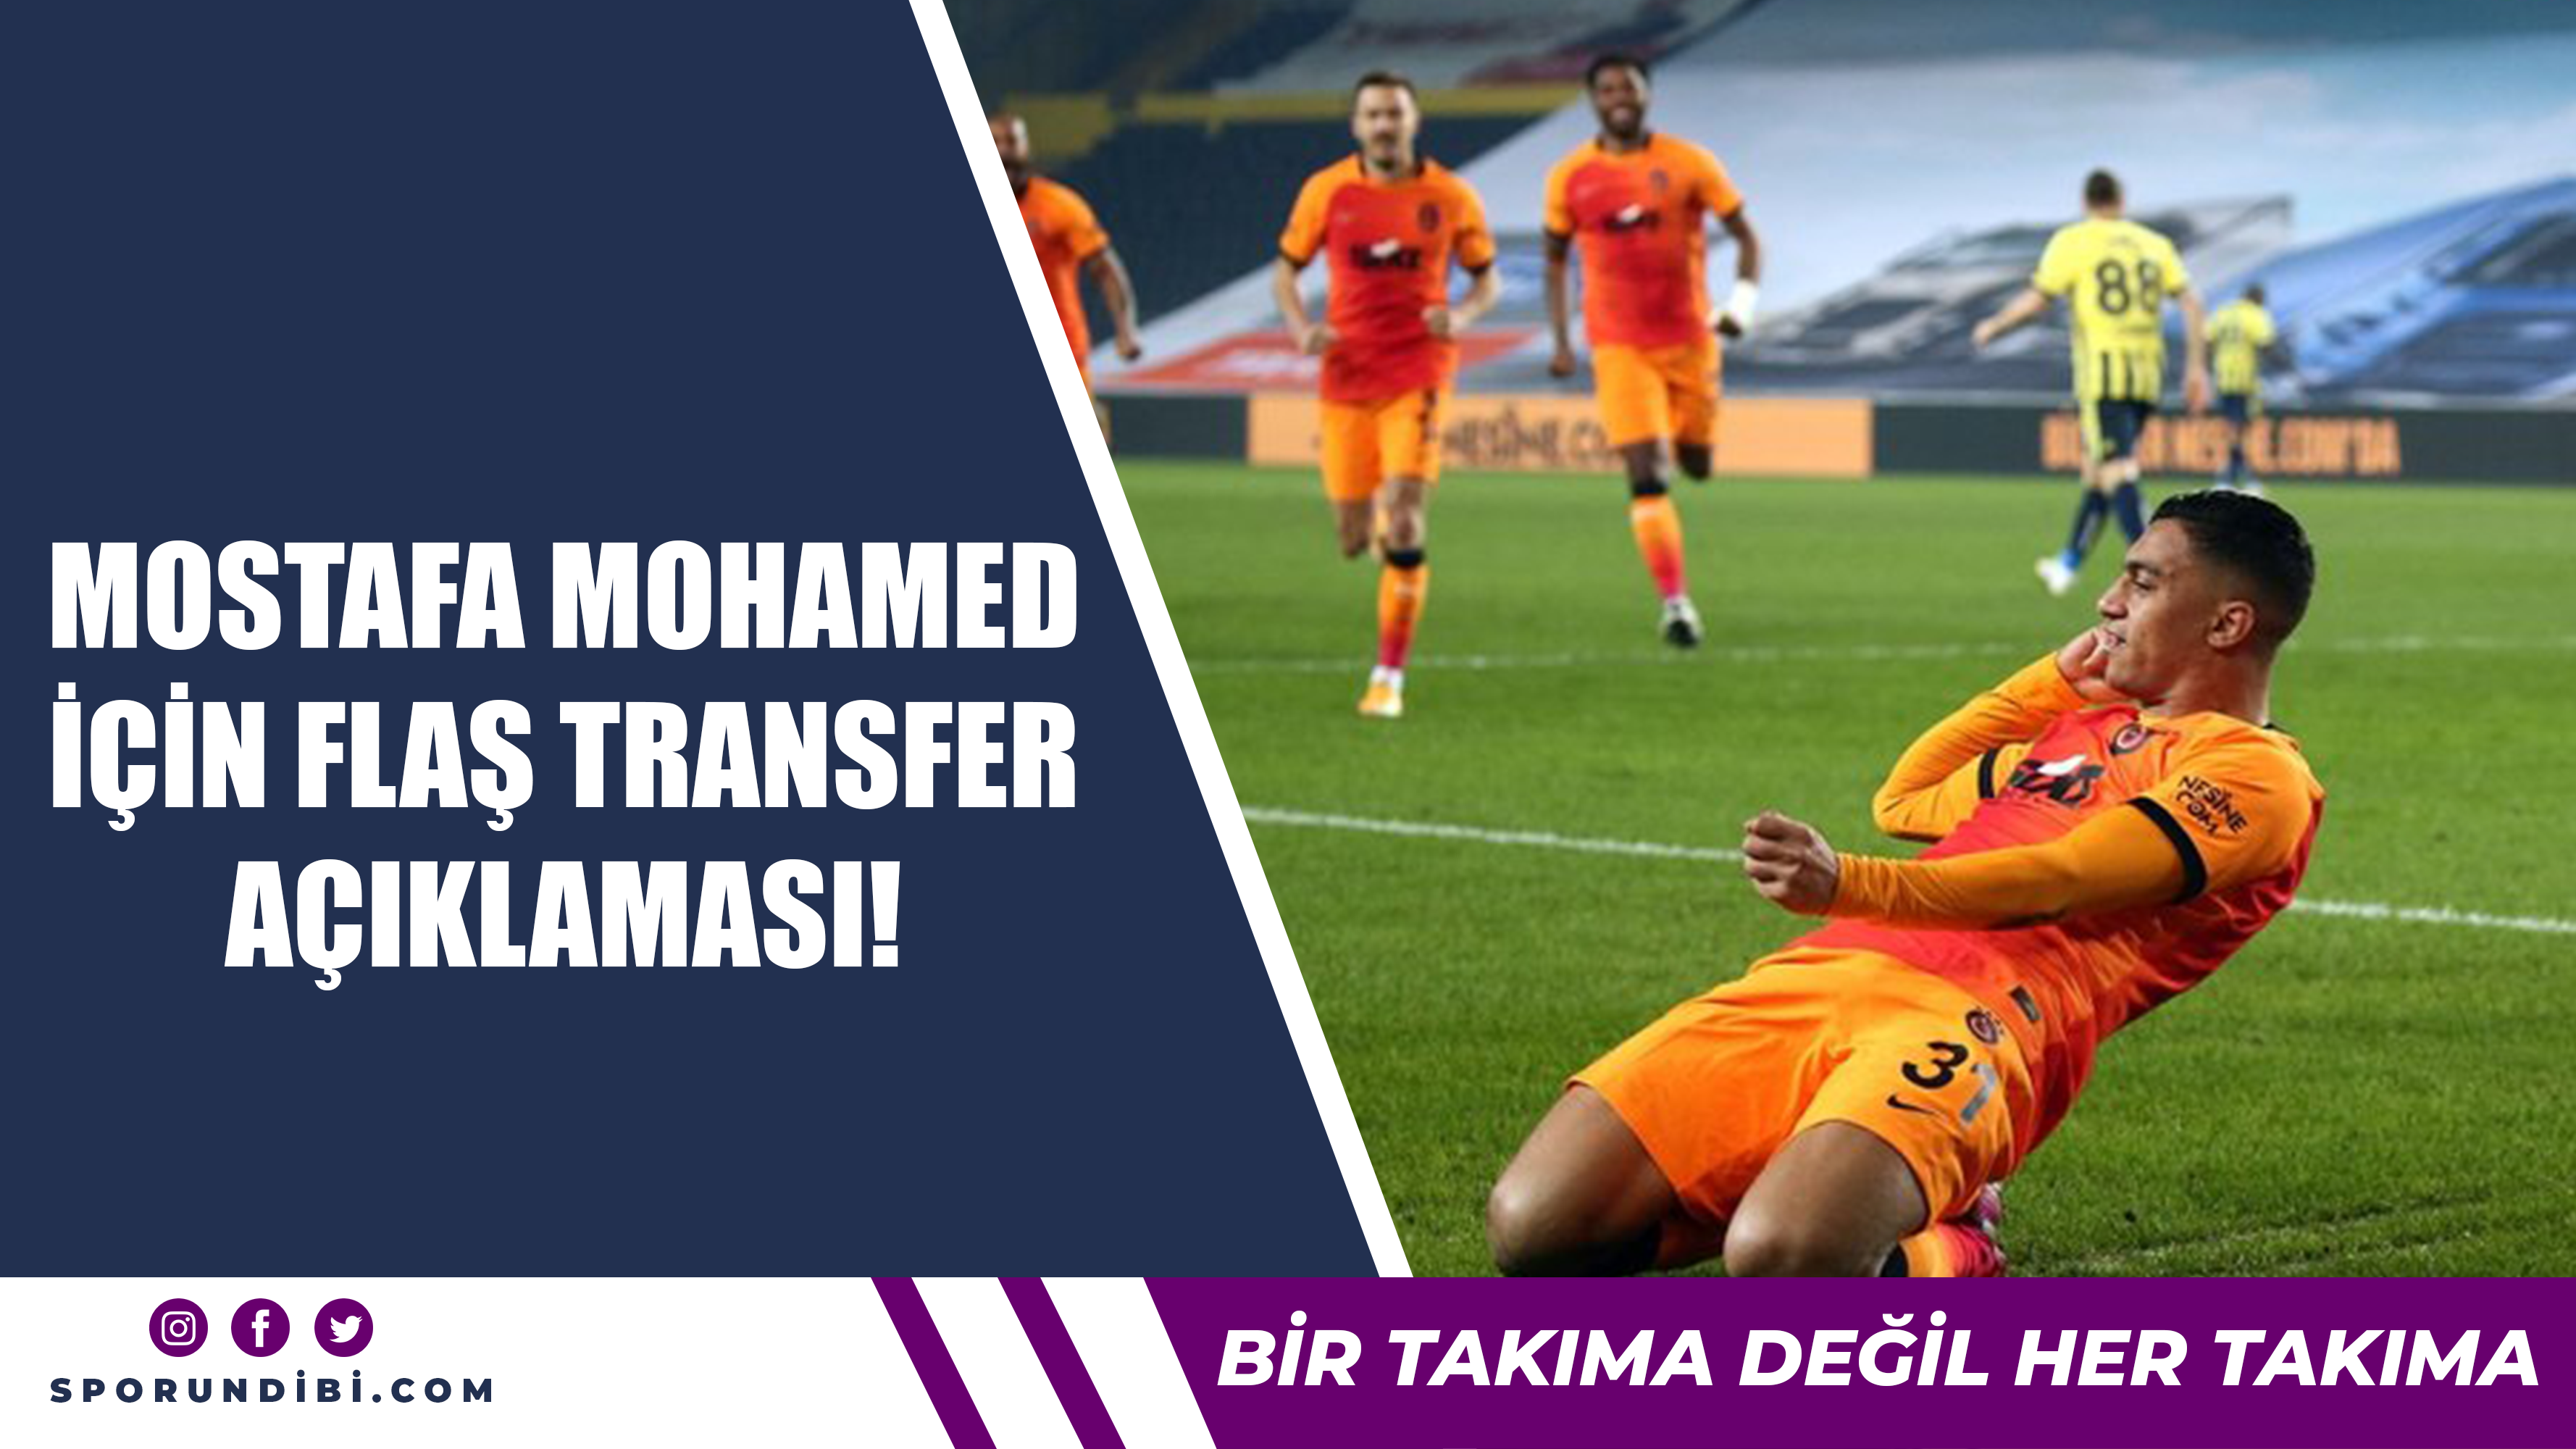 Mostafa Mohamed için flaş transfer açıklaması!